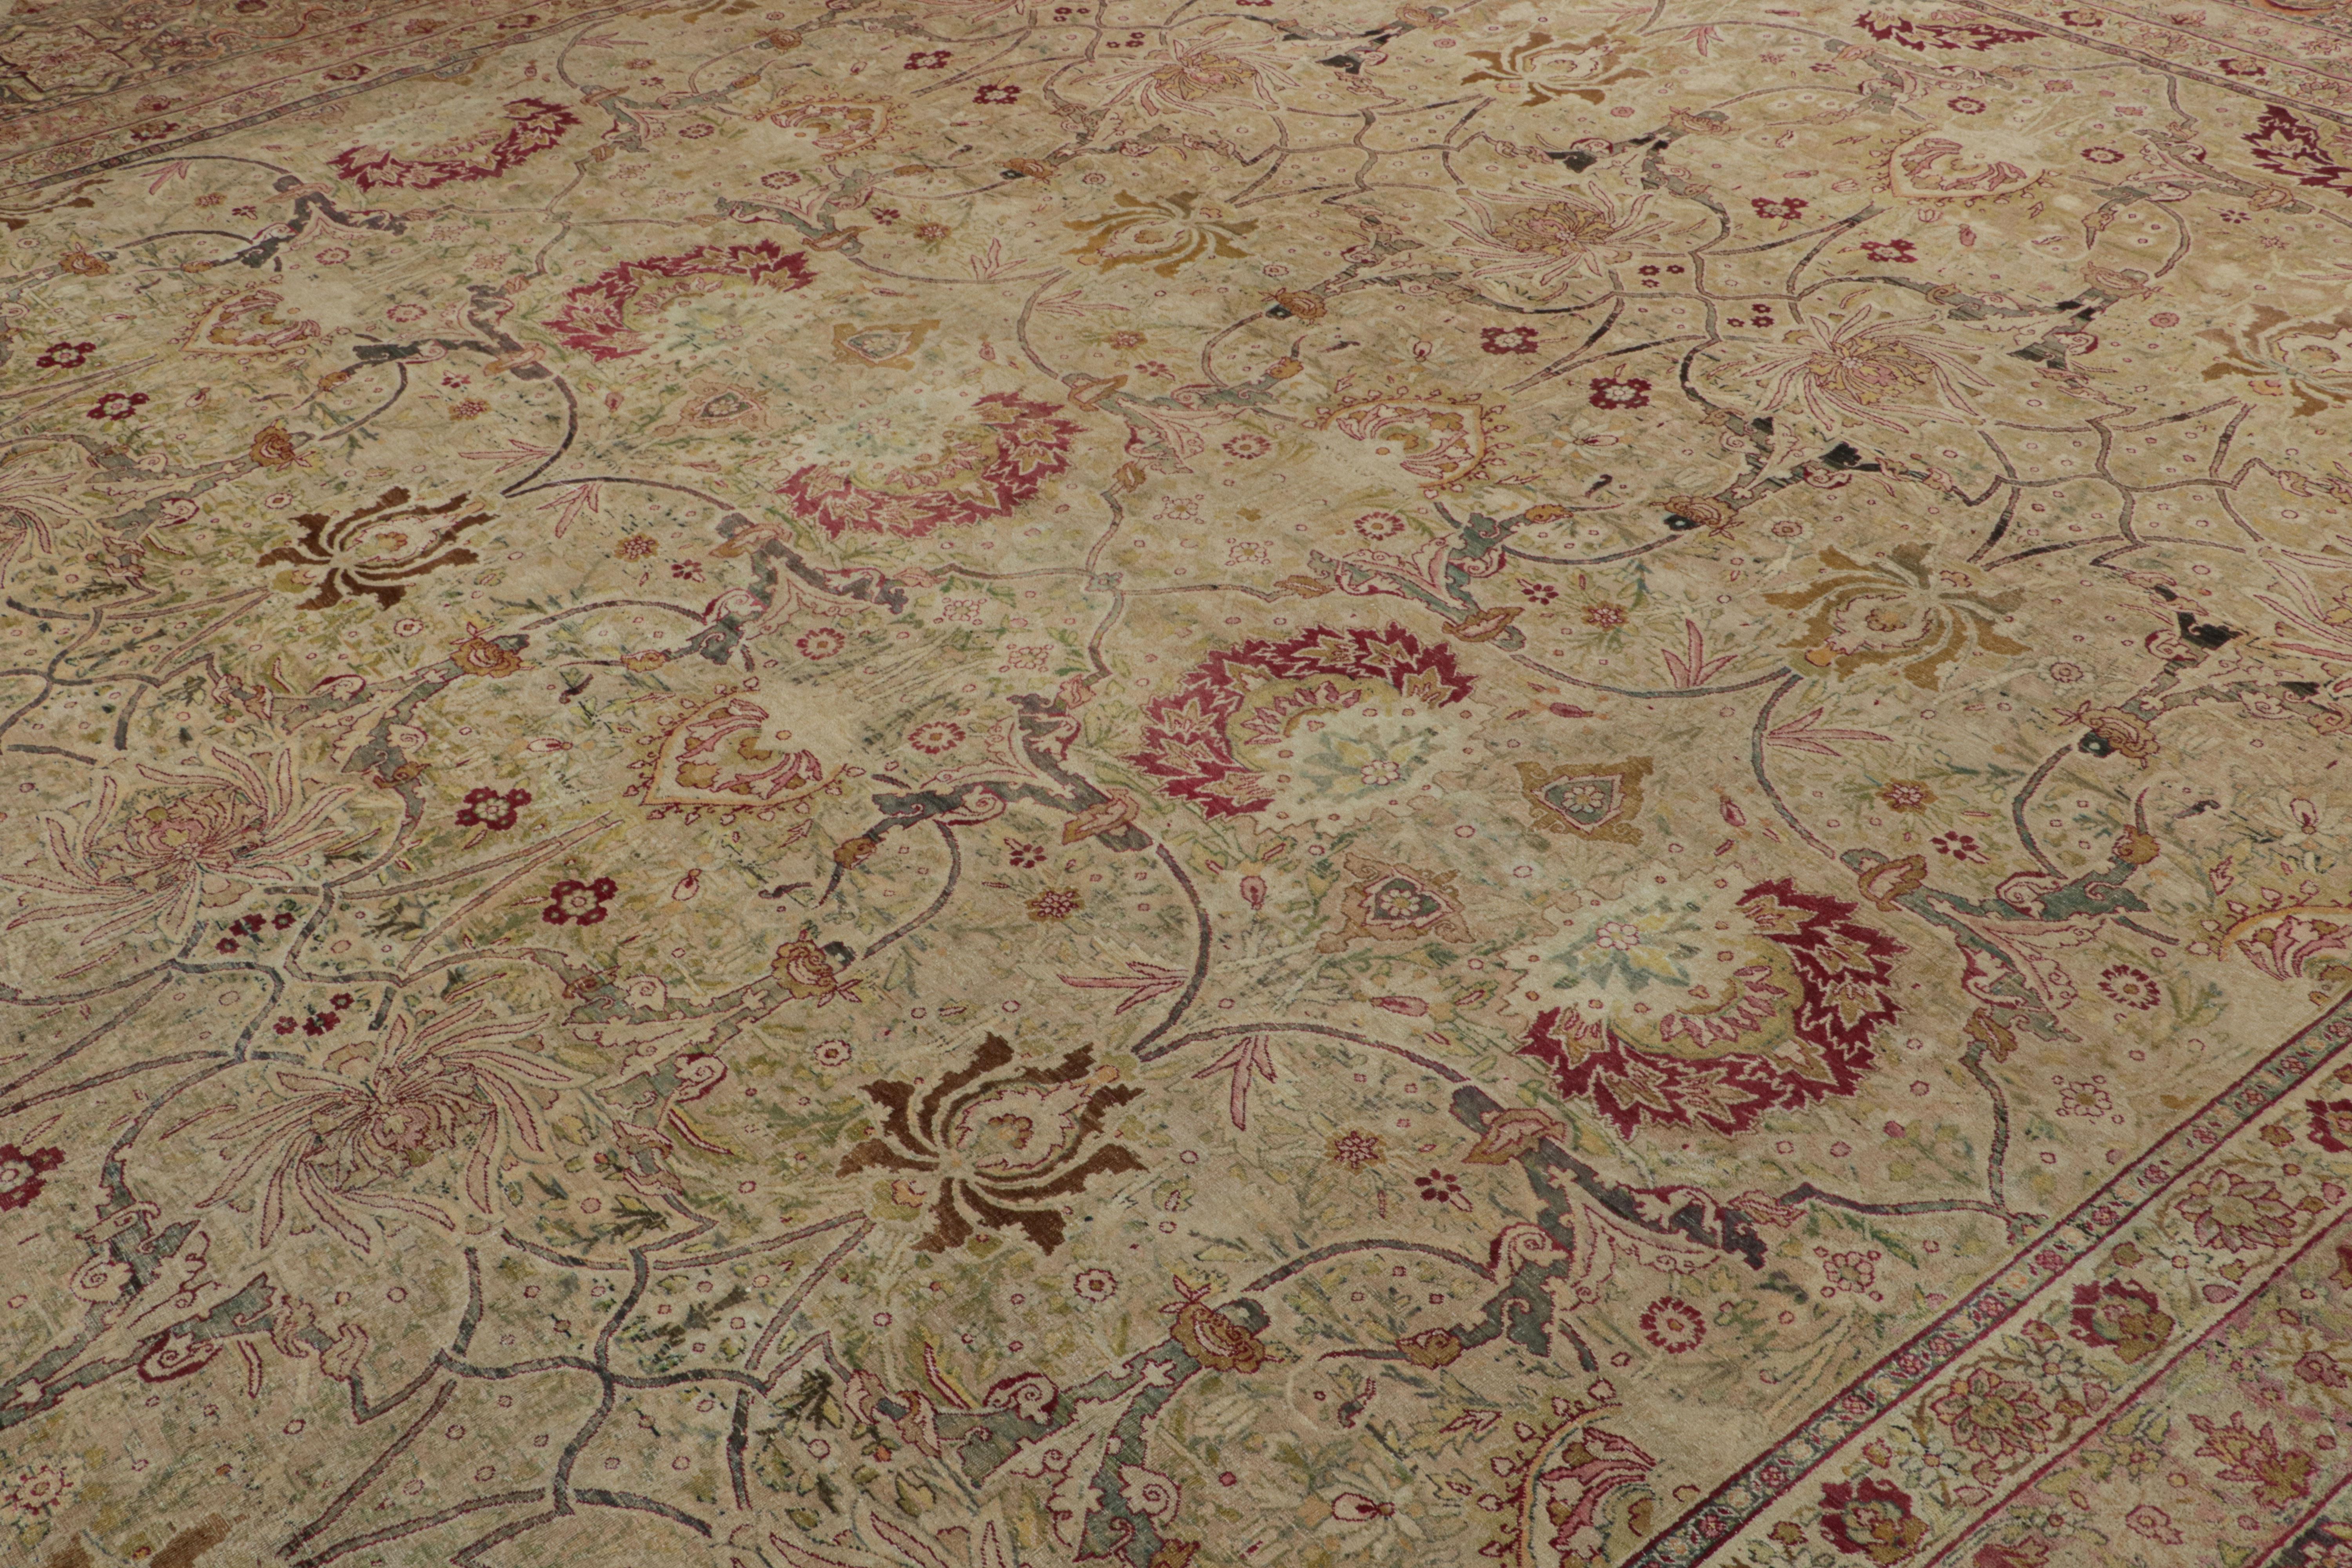 Noué à la main en laine vers 1920-1930, ce tapis persan ancien de 15x18 est une collection particulièrement intéressante et rare de Kerman Lavar. 

Sur le Design :

Bien que les couleurs polychromes soulignent un motif floral omniprésent, les yeux